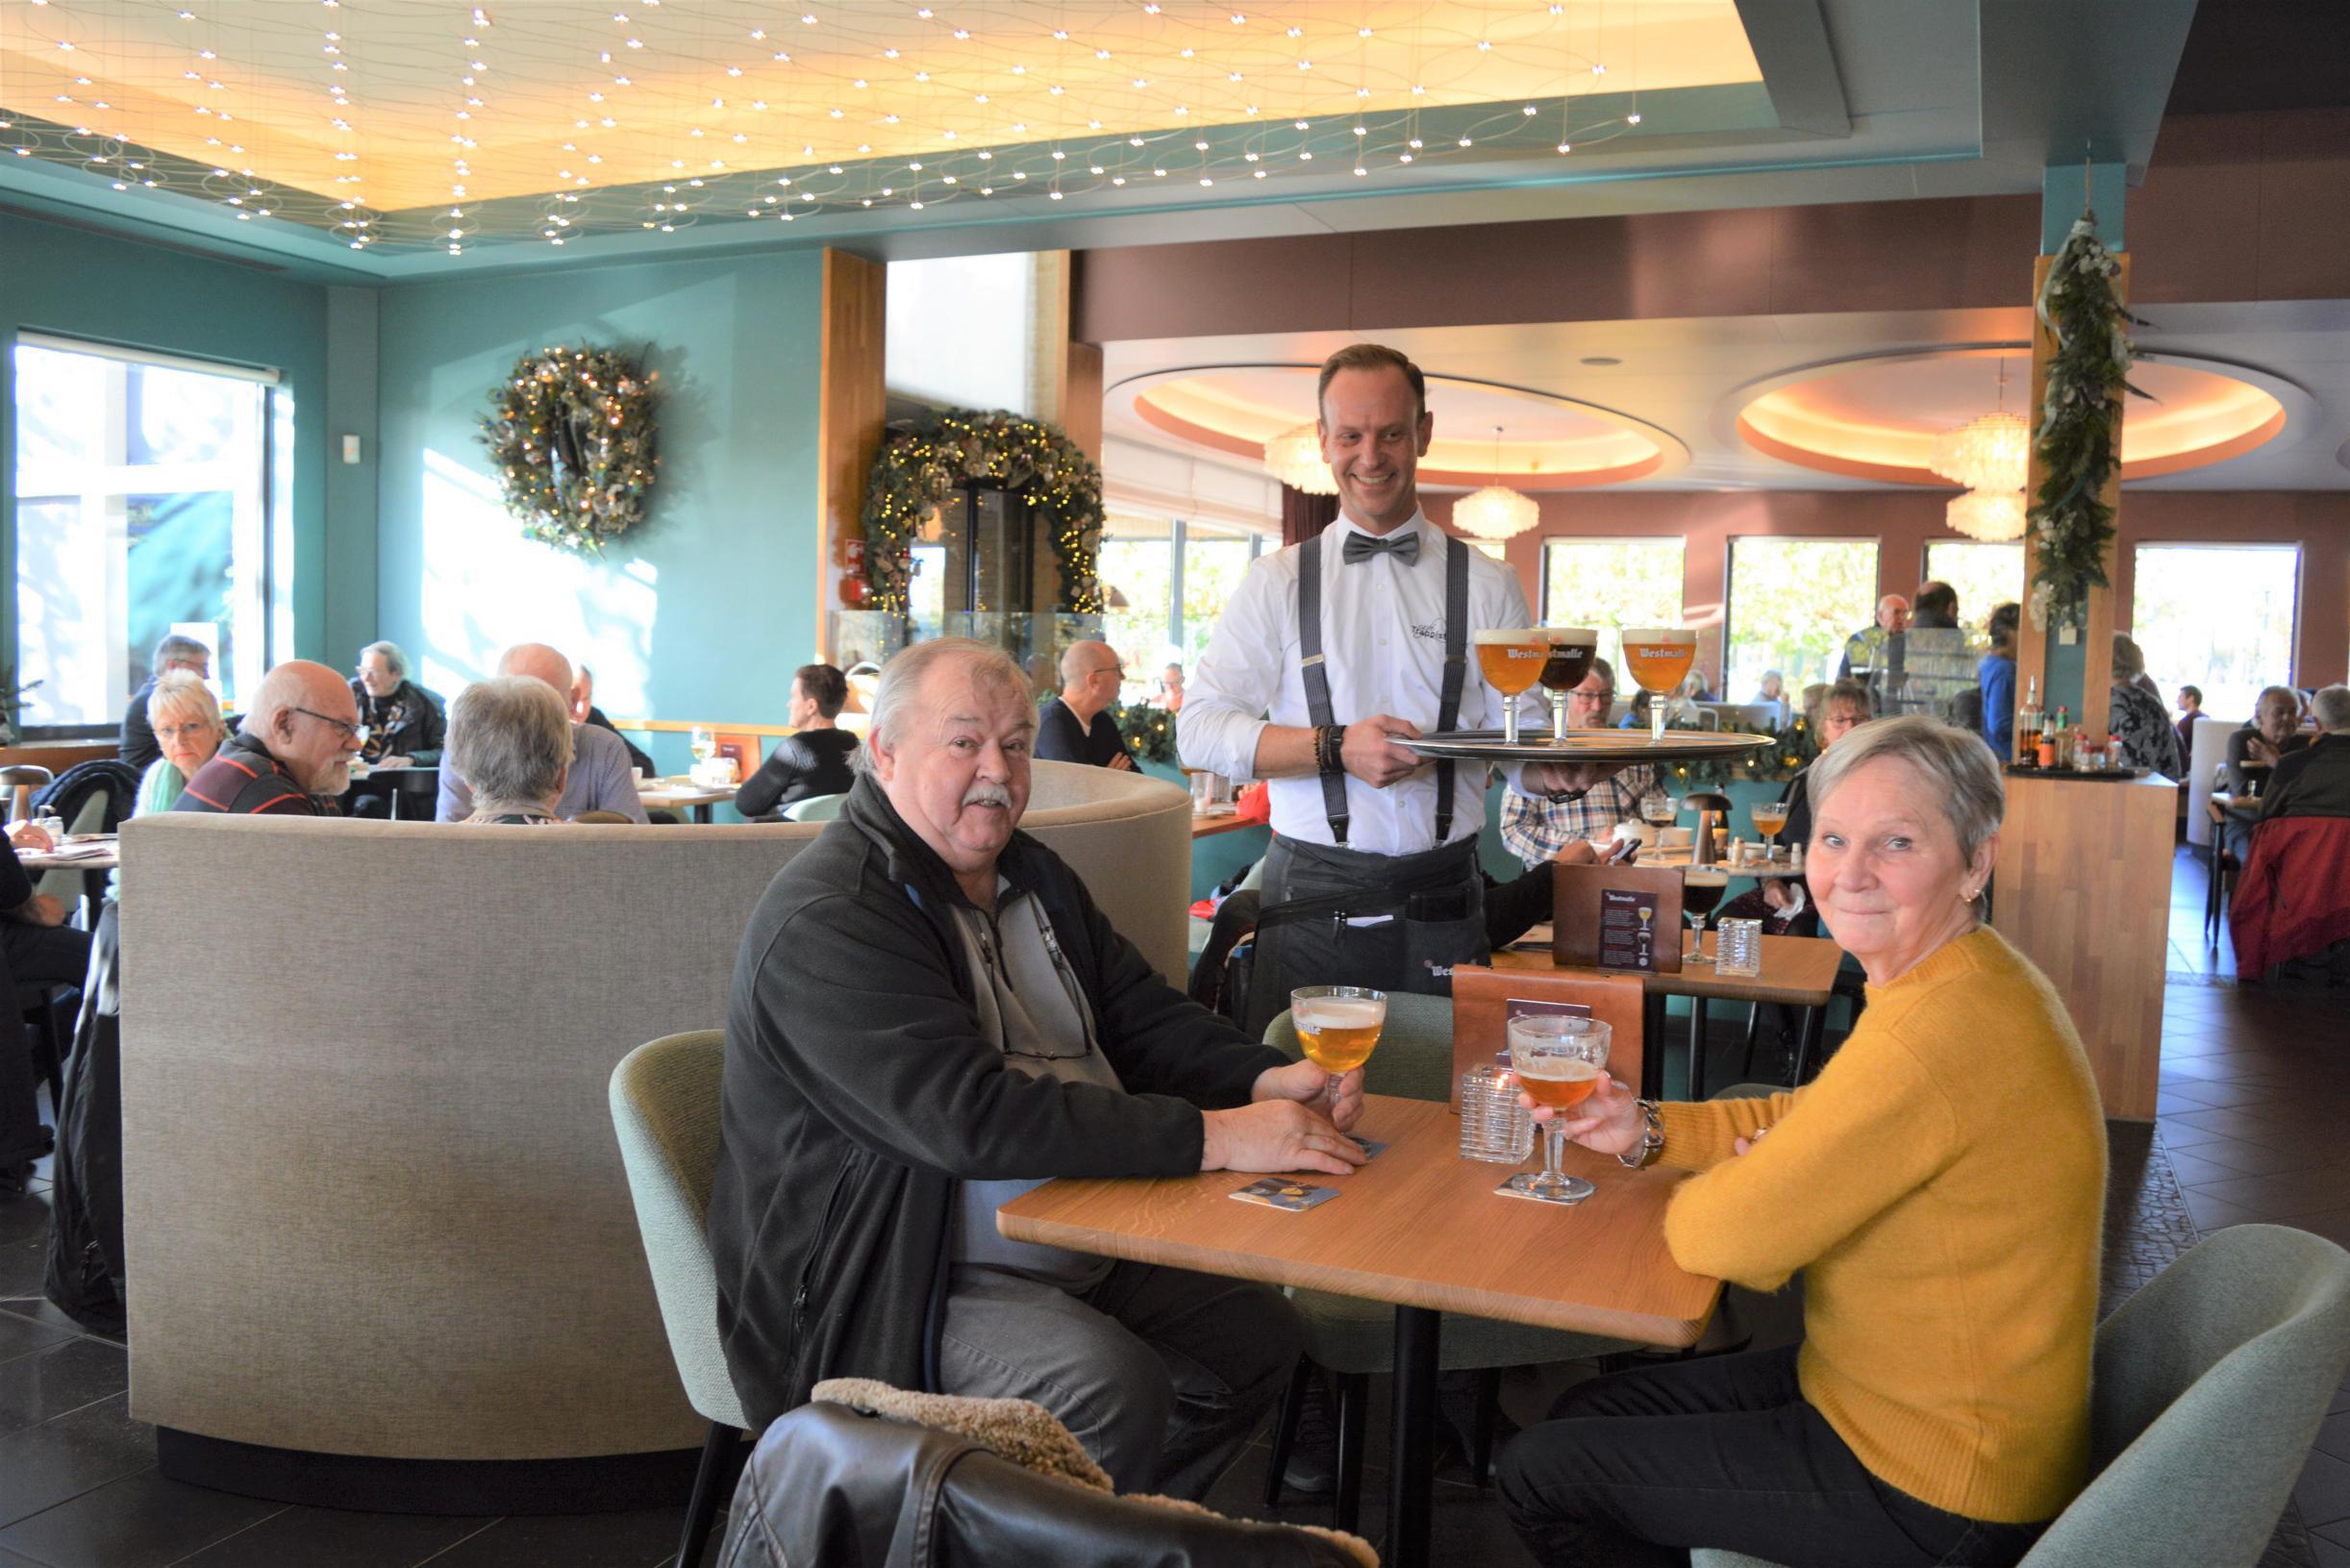 Café Trappisten steekt in een nieuw jasje met kamers ingericht in stijl van drie bekende  patersbieren